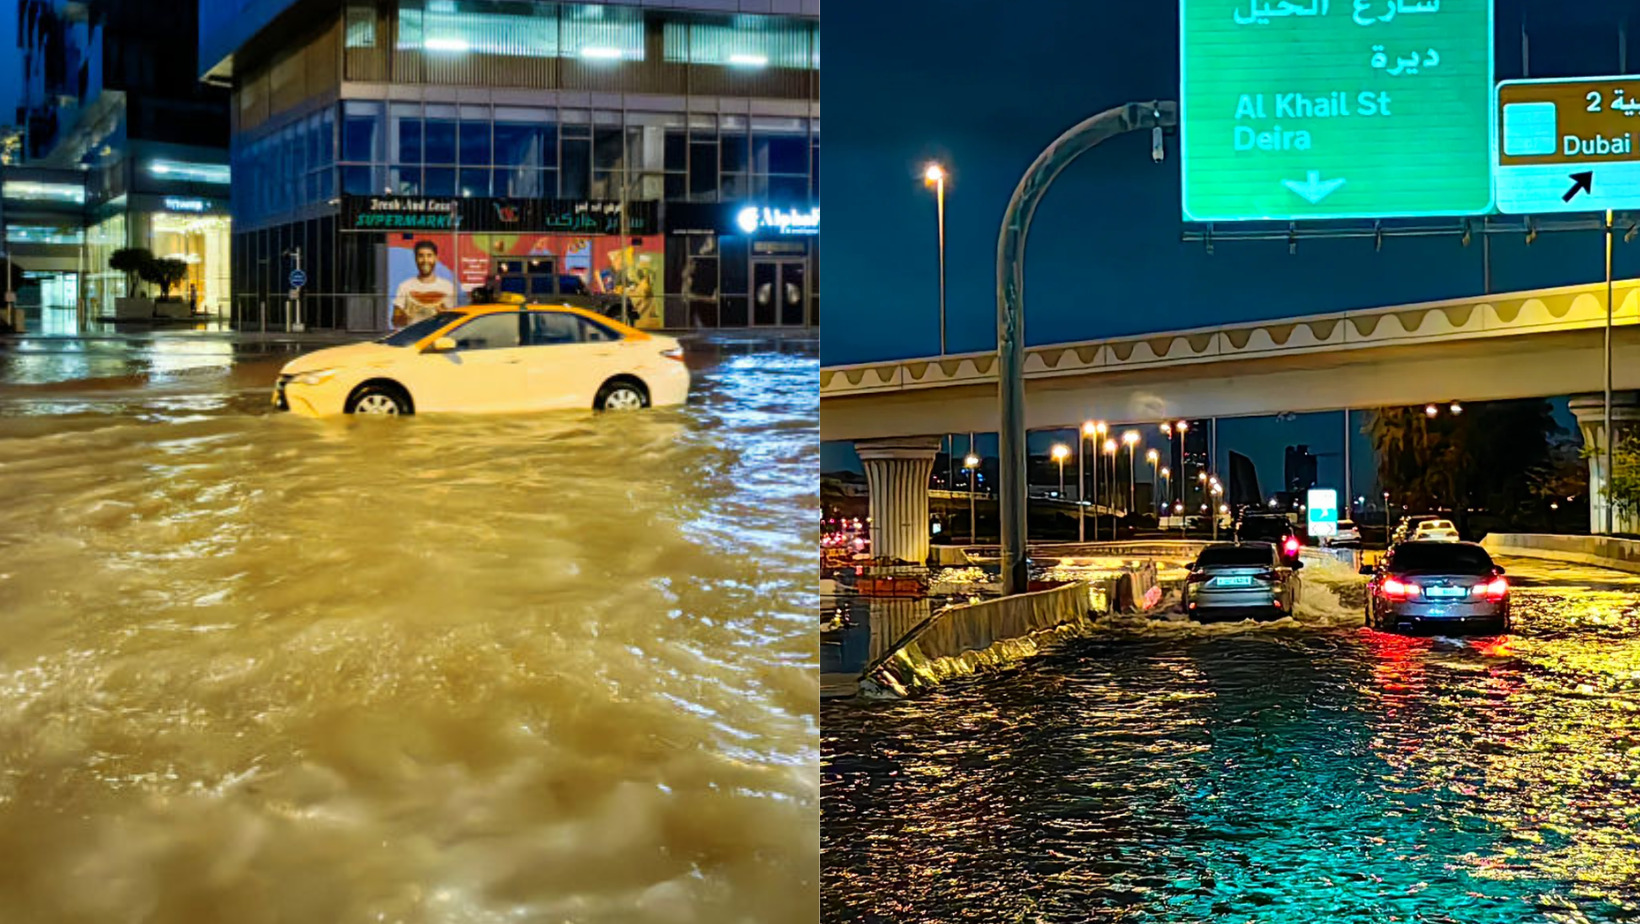 Imágenes muestran el momento exacto que tormenta desencadena inundaciones en Dubai